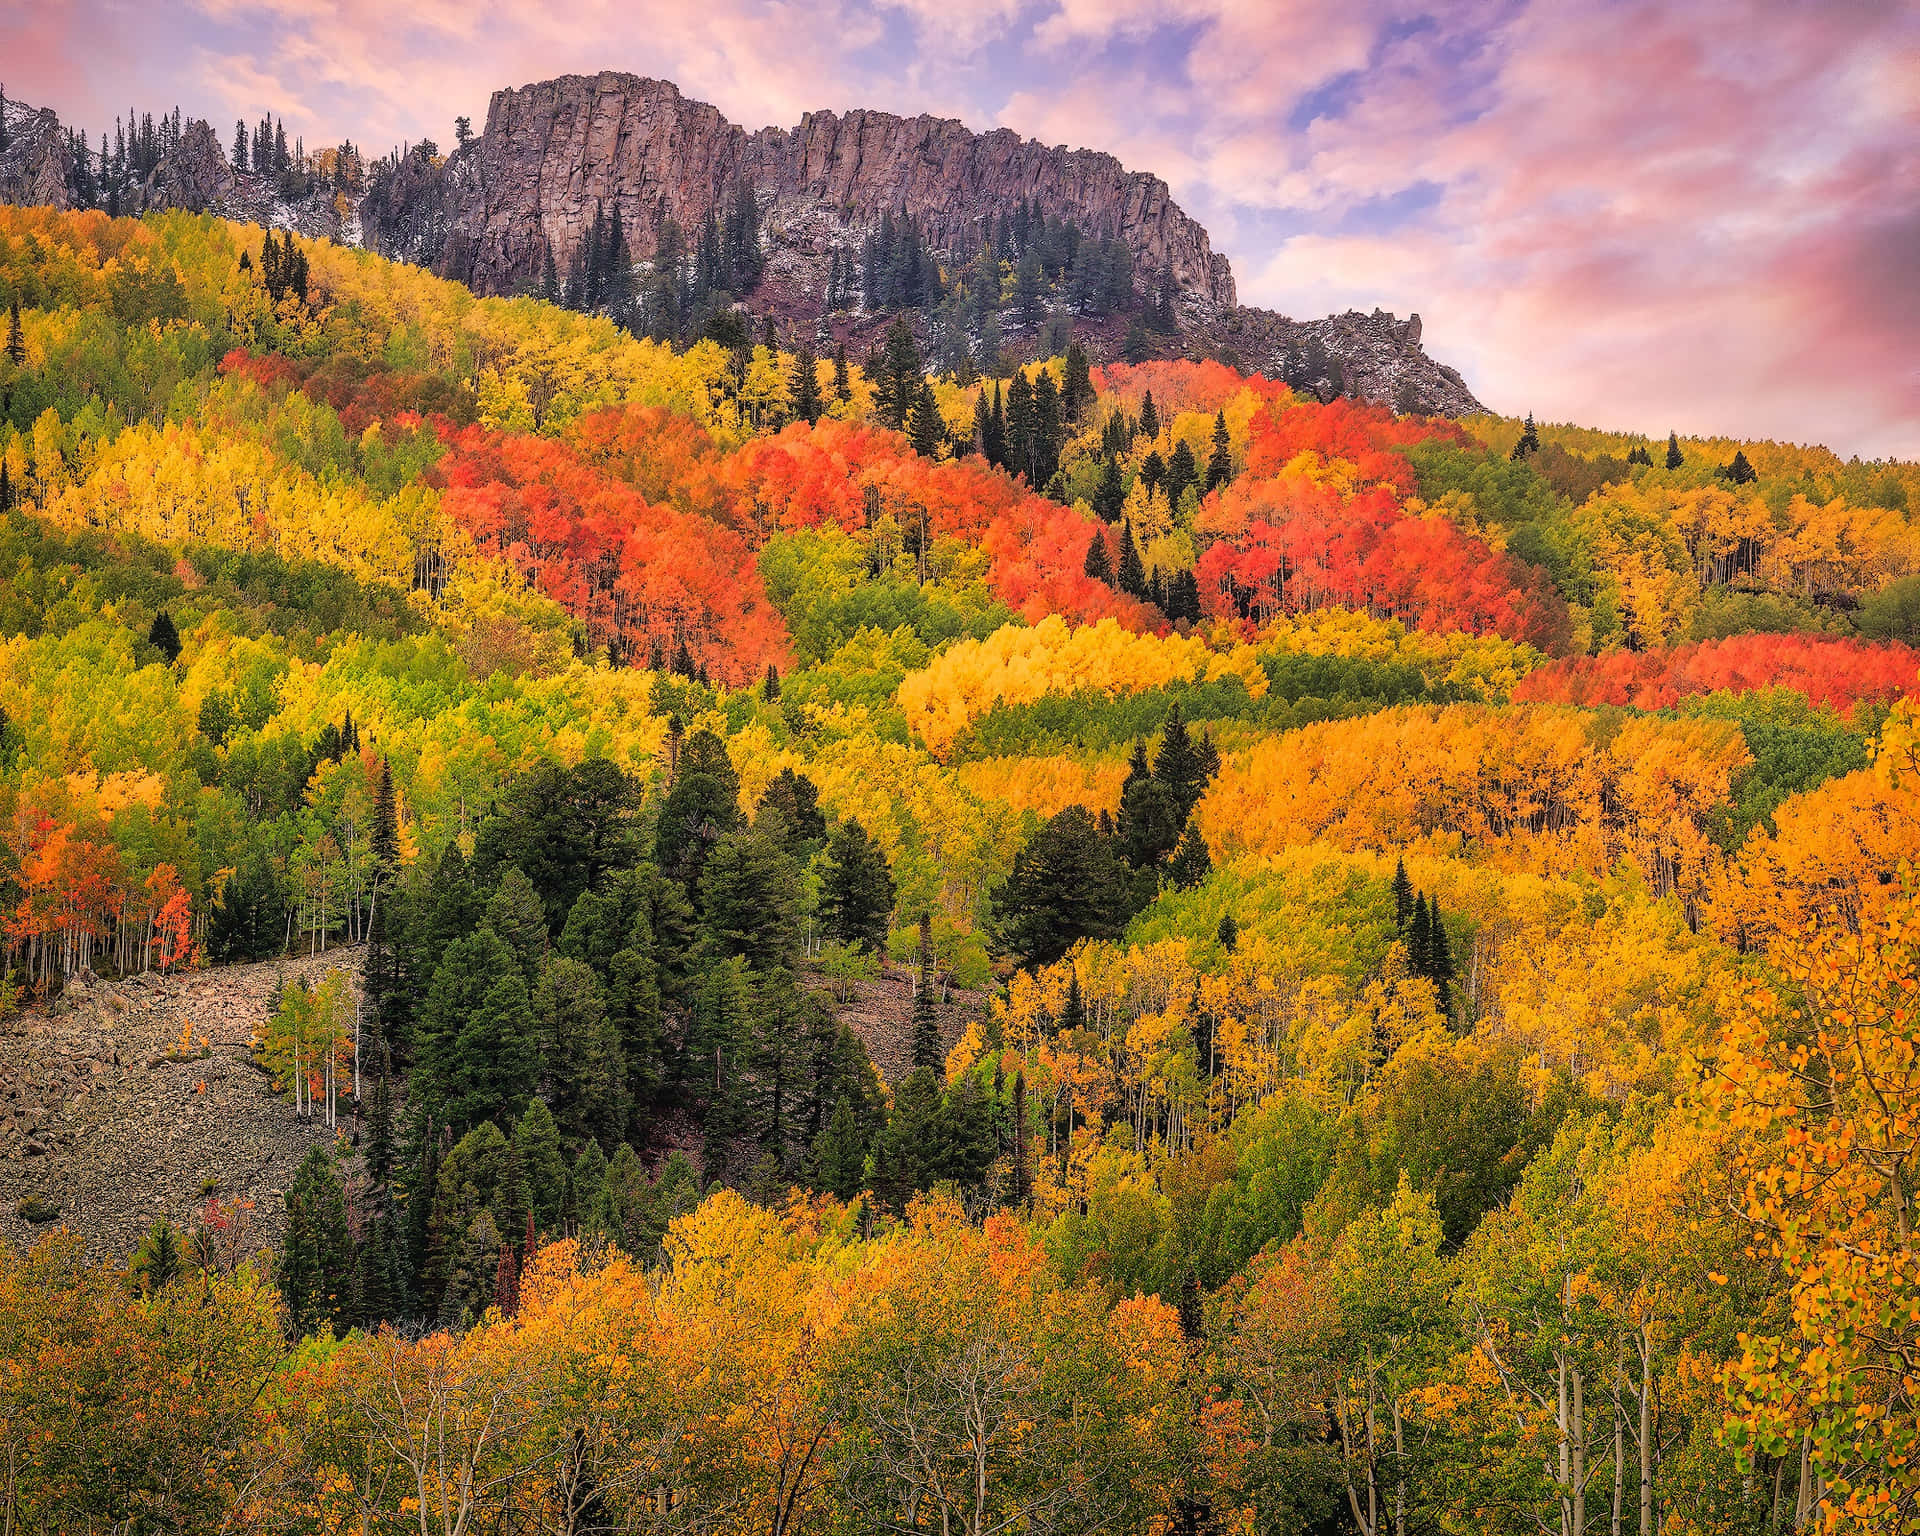 Enchanting Fall Season in Scenic Mountain Landscape Wallpaper